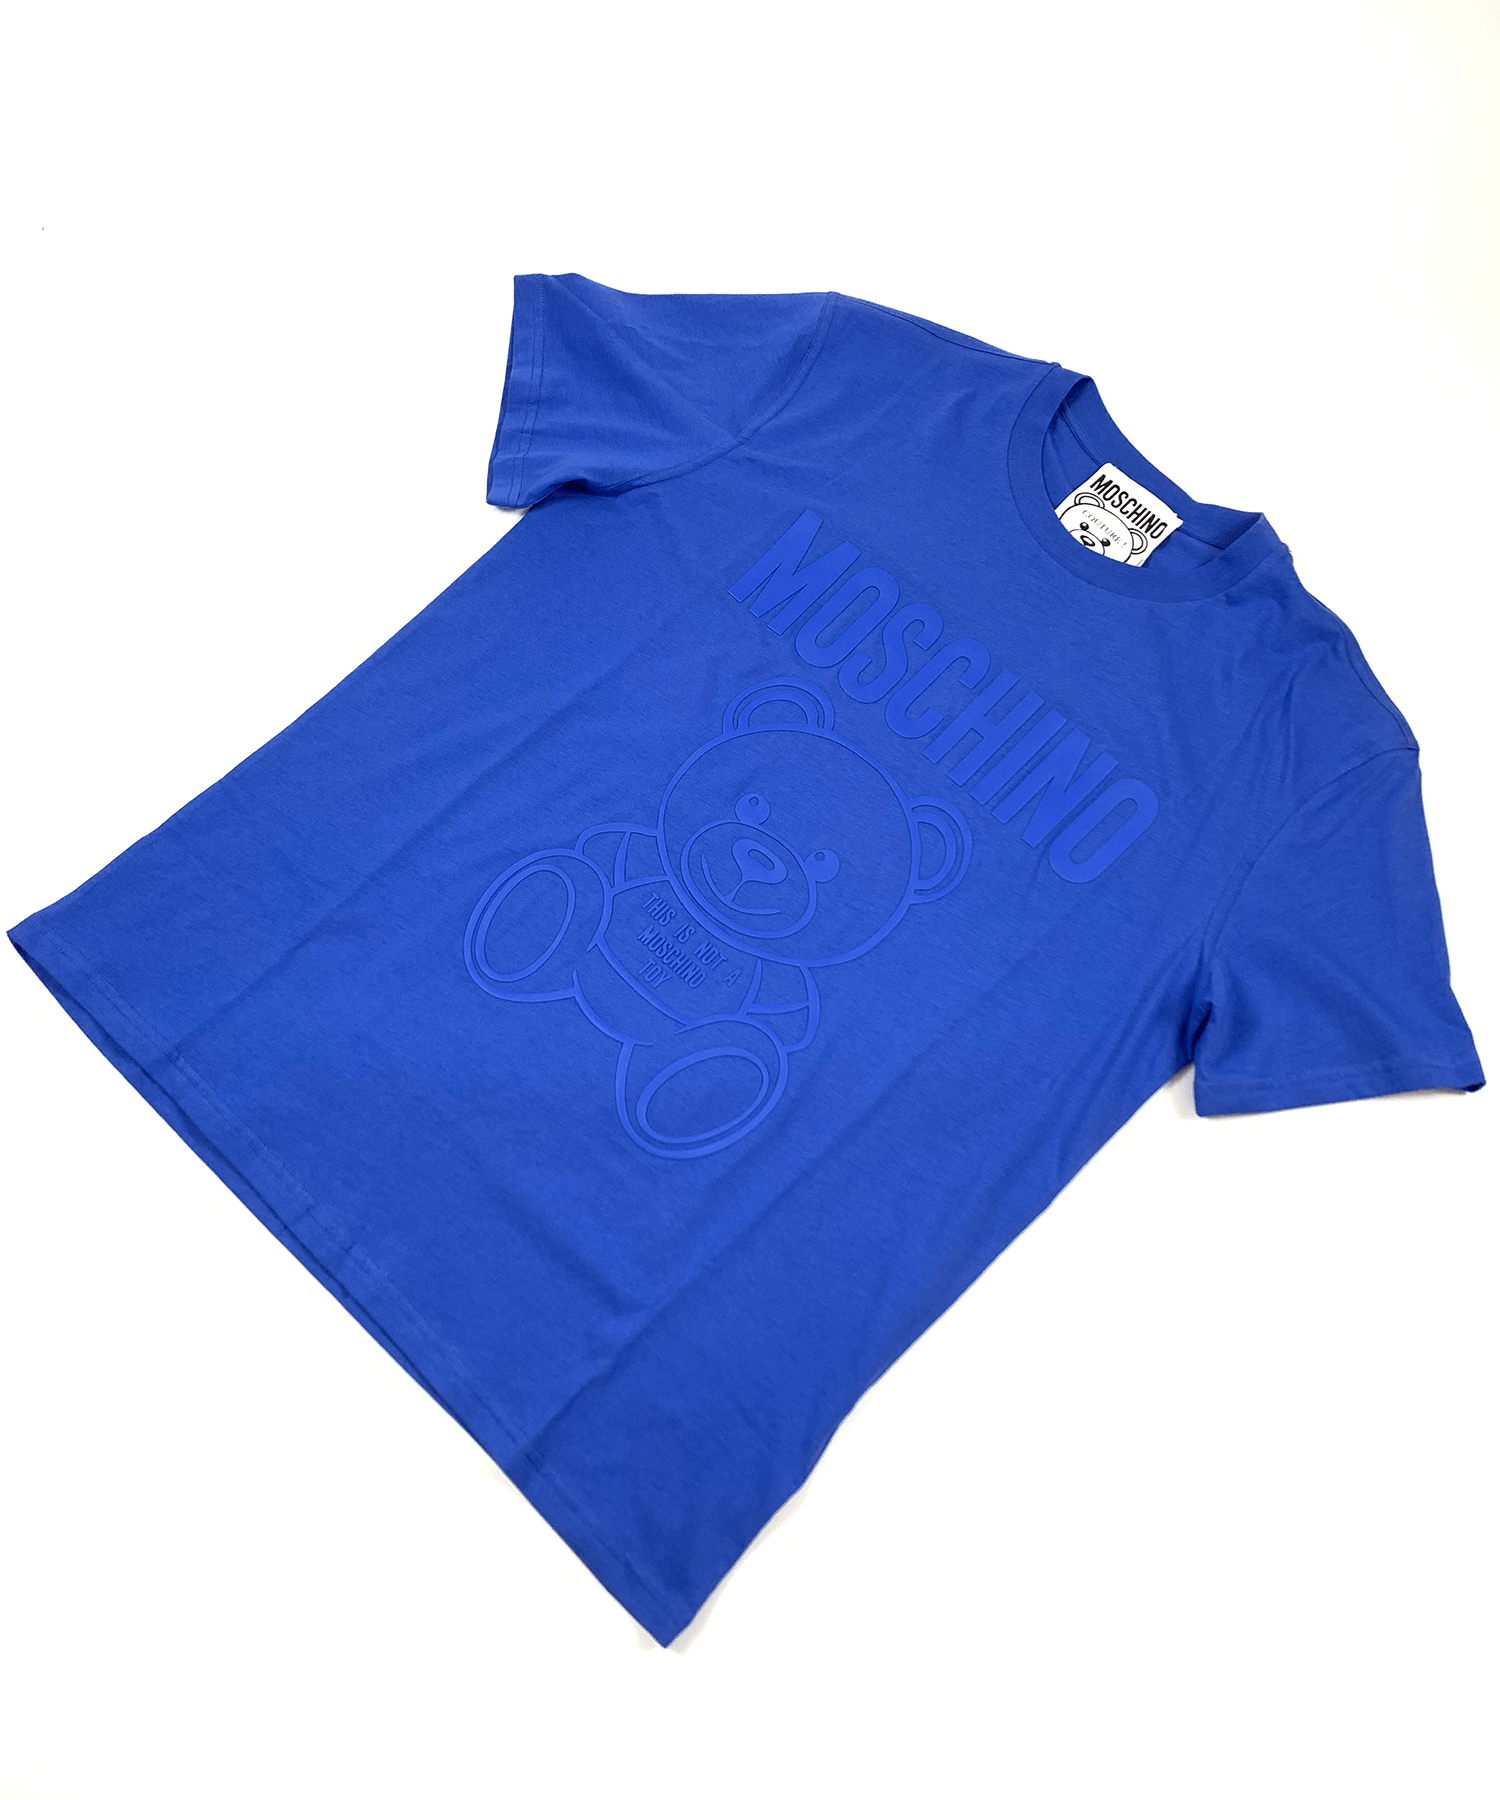 MOSCHINO  TEDDY BEAR オーガニックジャージTシャツ(ブルー)